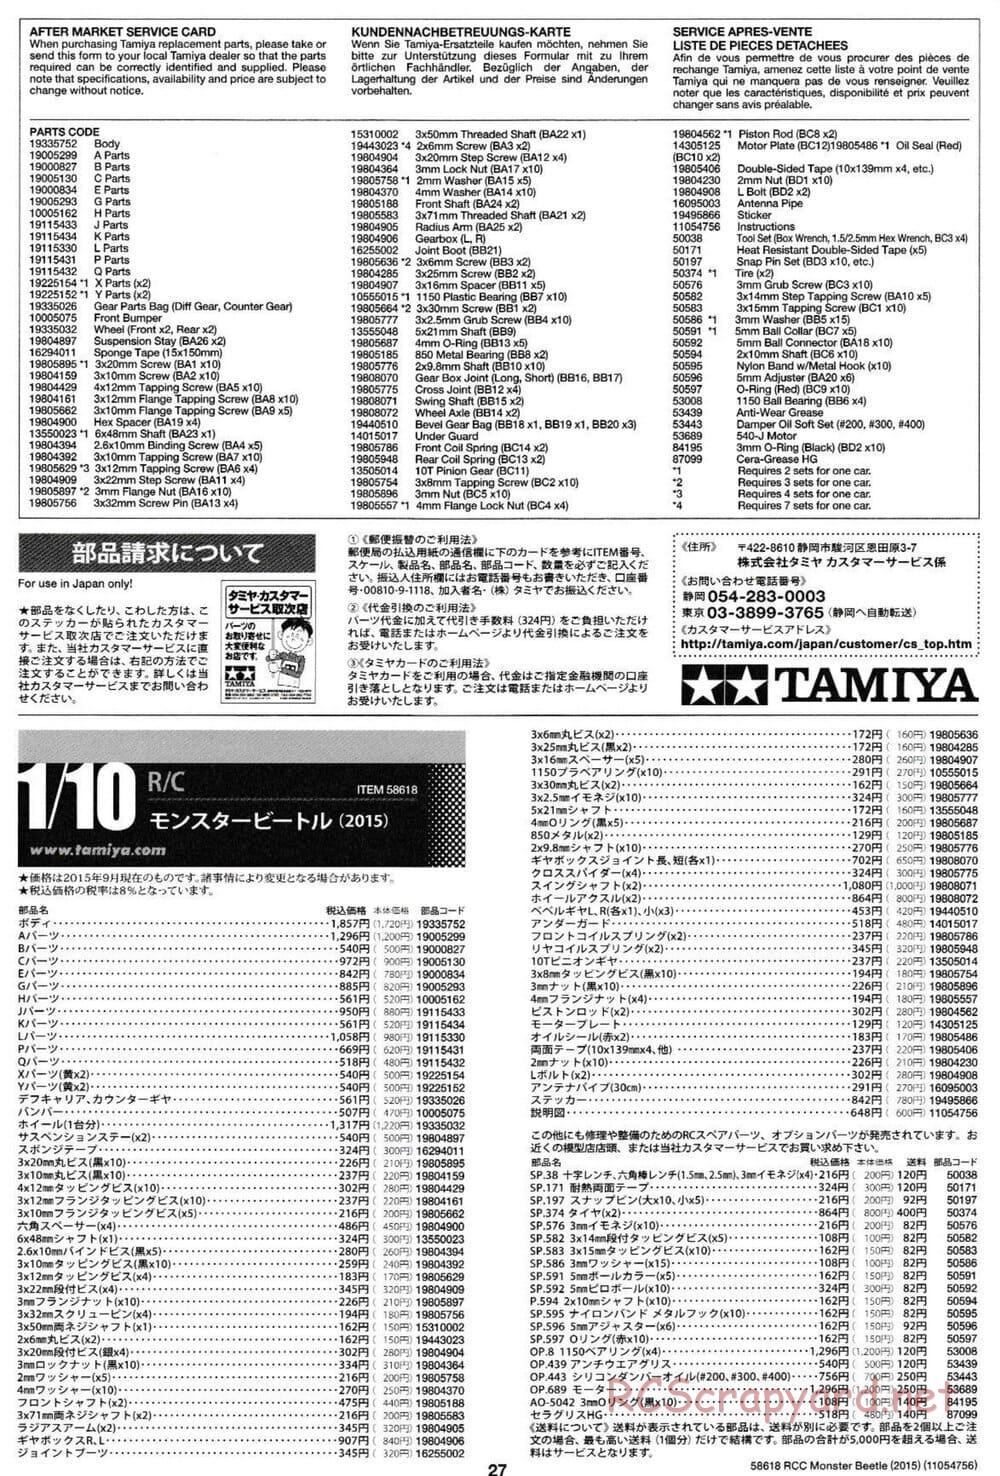 Tamiya - Monster Beetle 2015 - ORV Chassis - Manual - Page 27